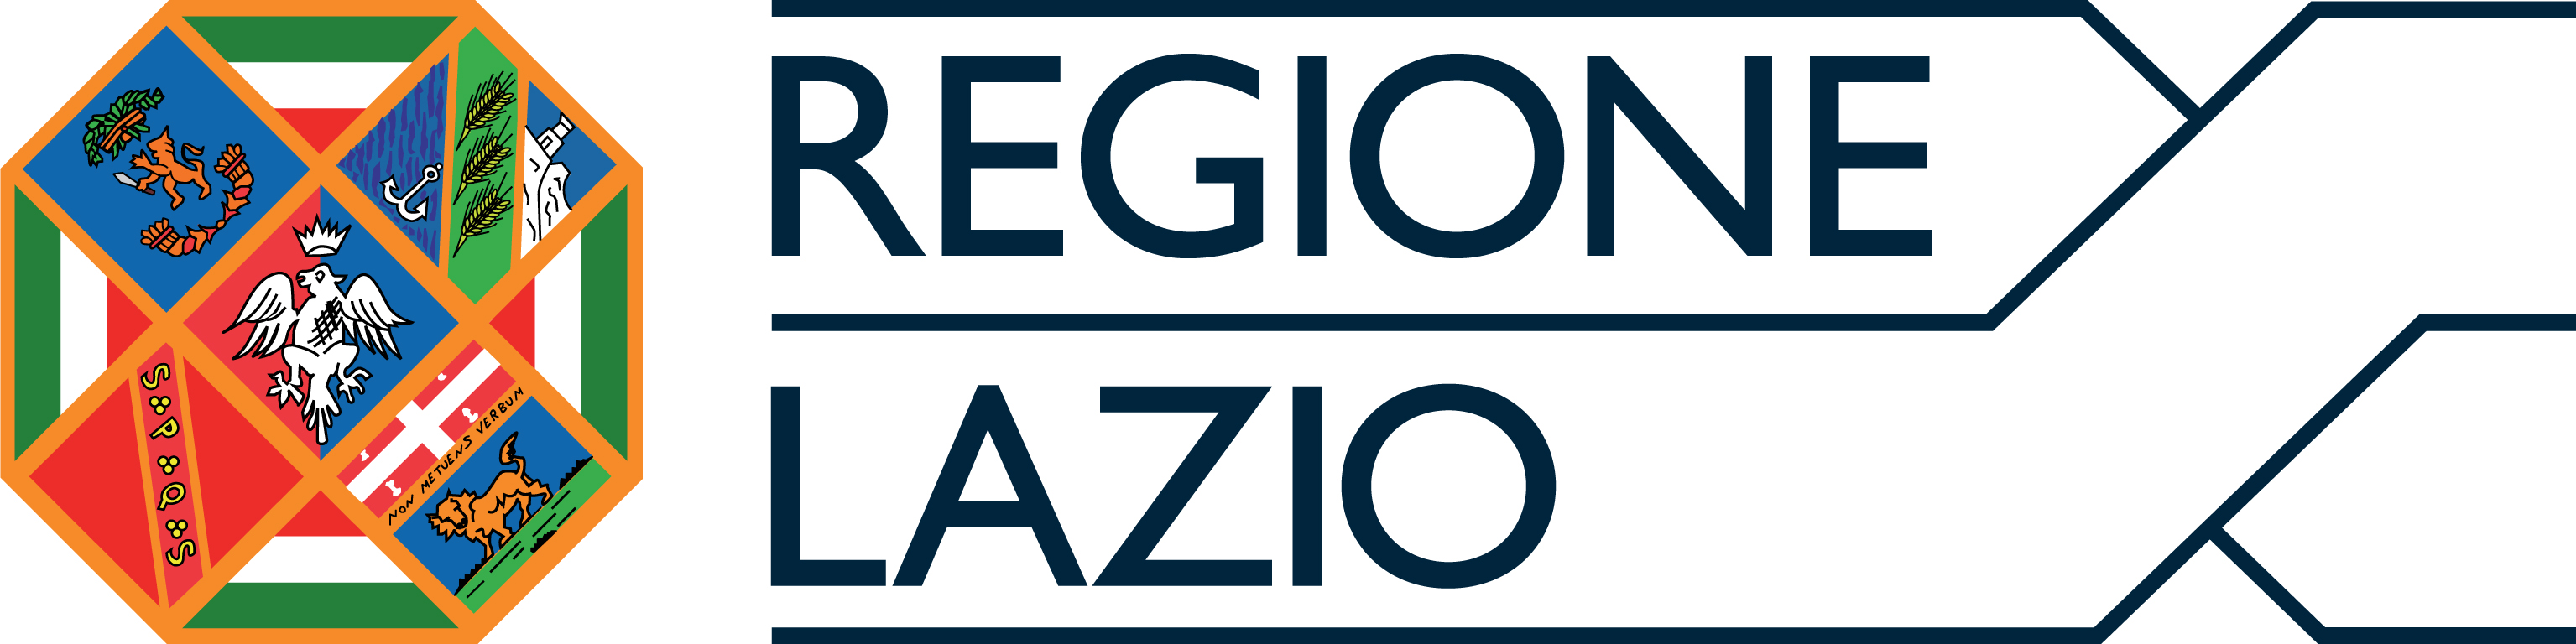 Regione Lazio 2021